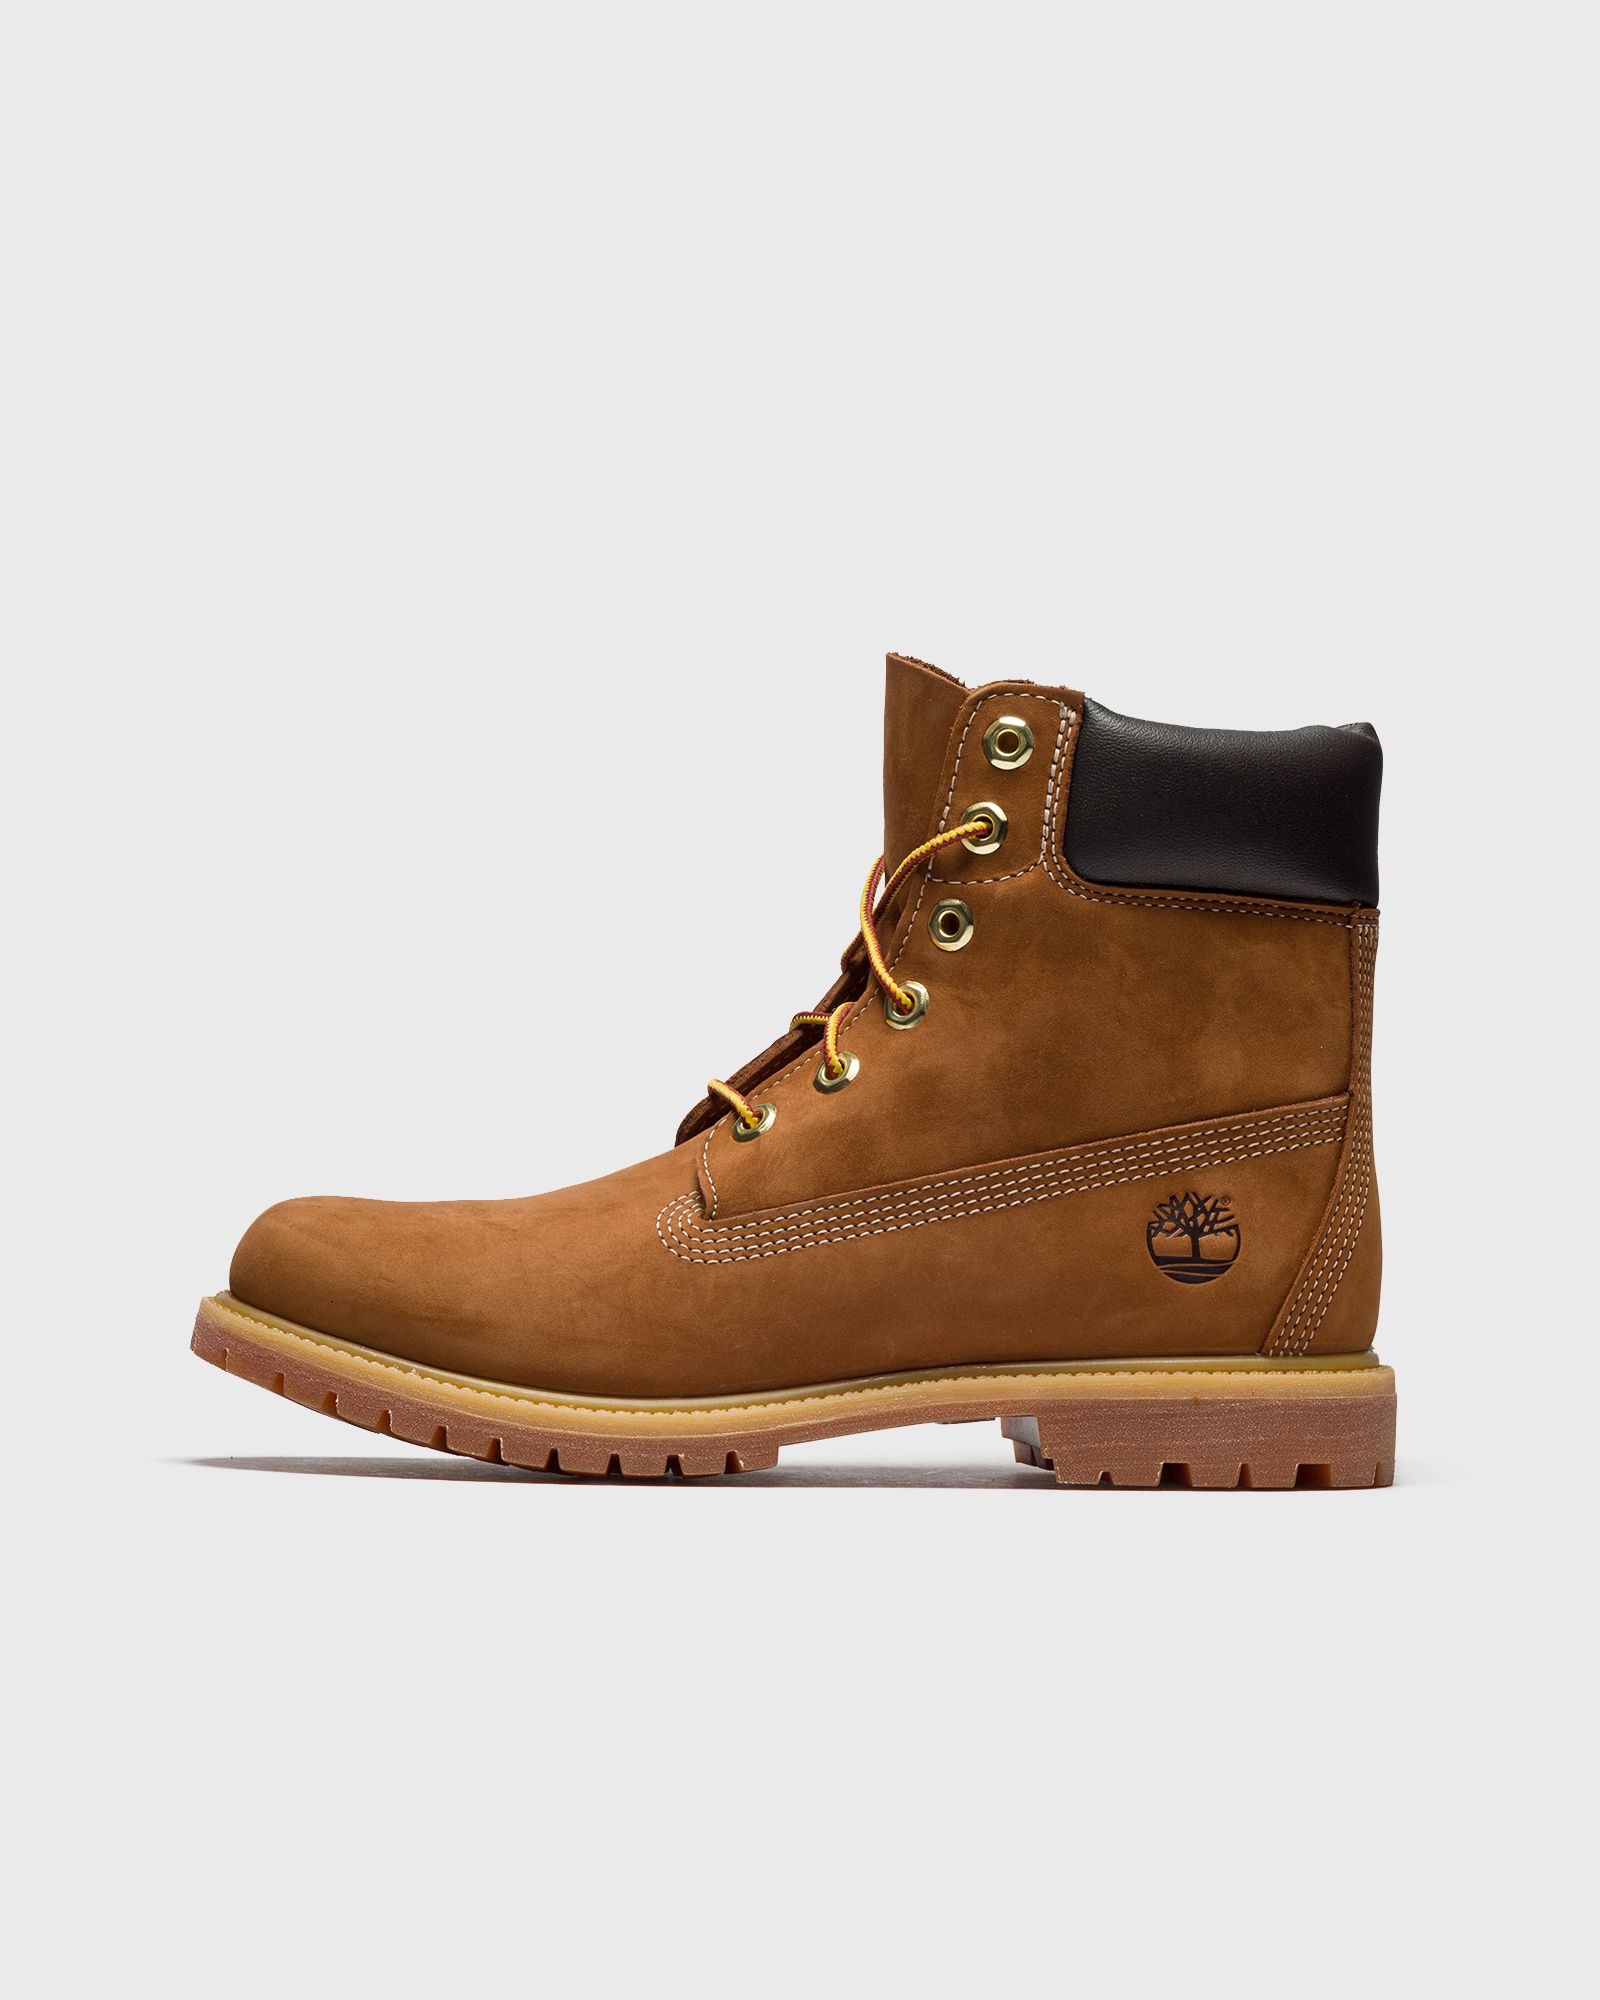 Timberland - wmns 6 inch premium boot women boots brown in größe:36